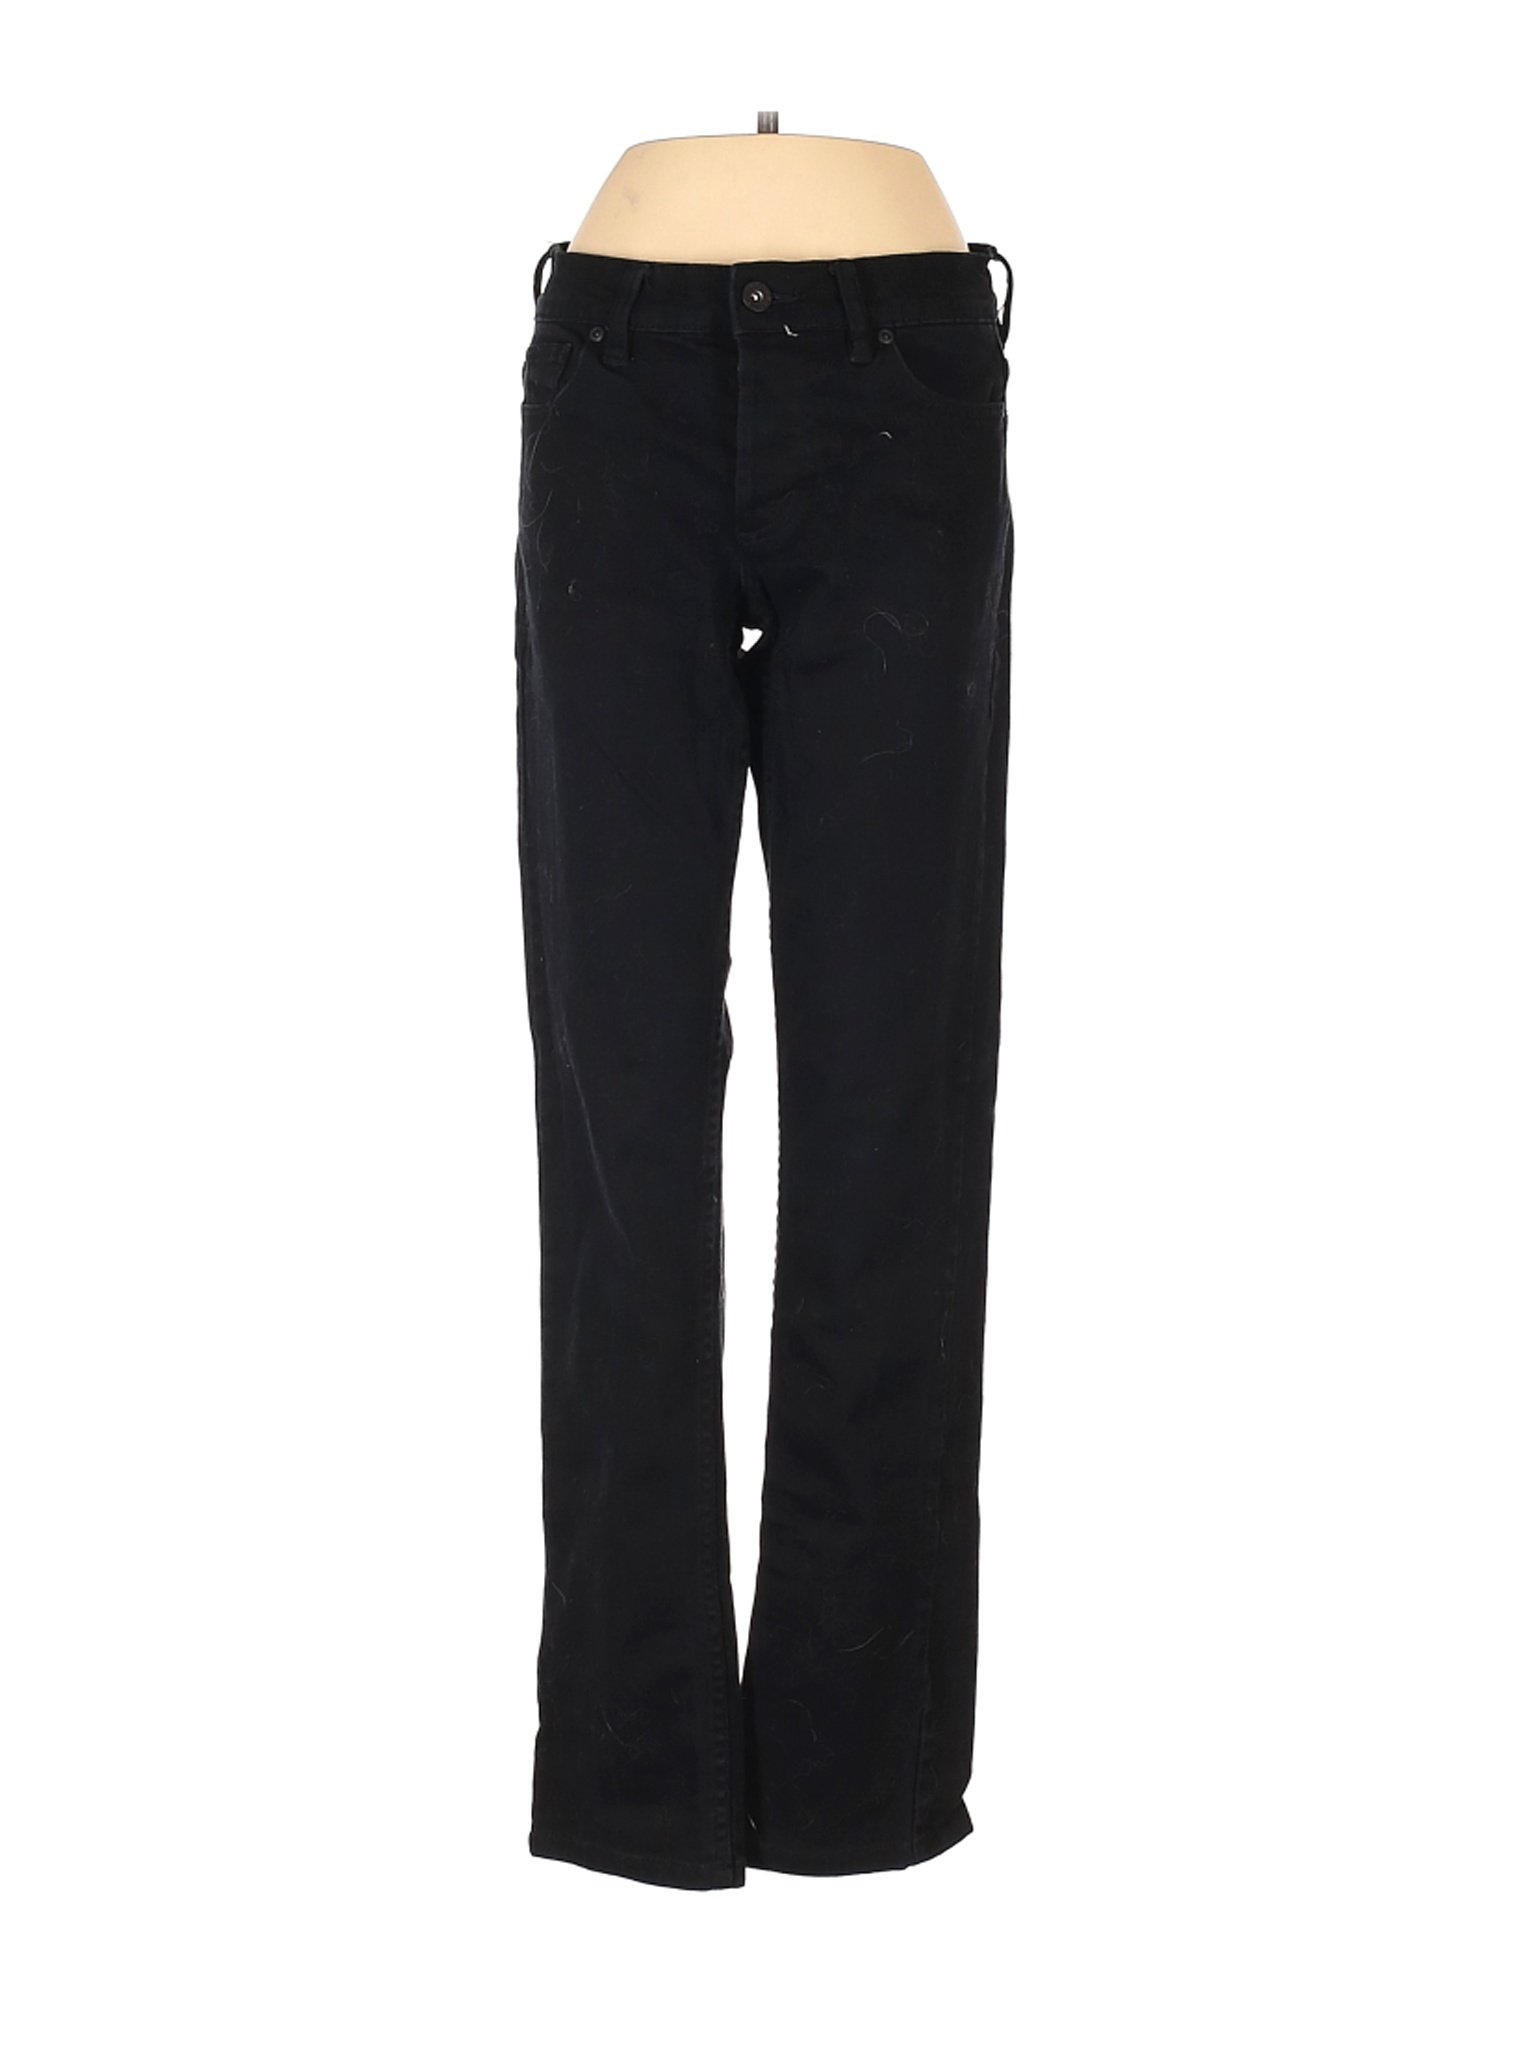 Rude Jeans Women Black Jeans 26W | eBay